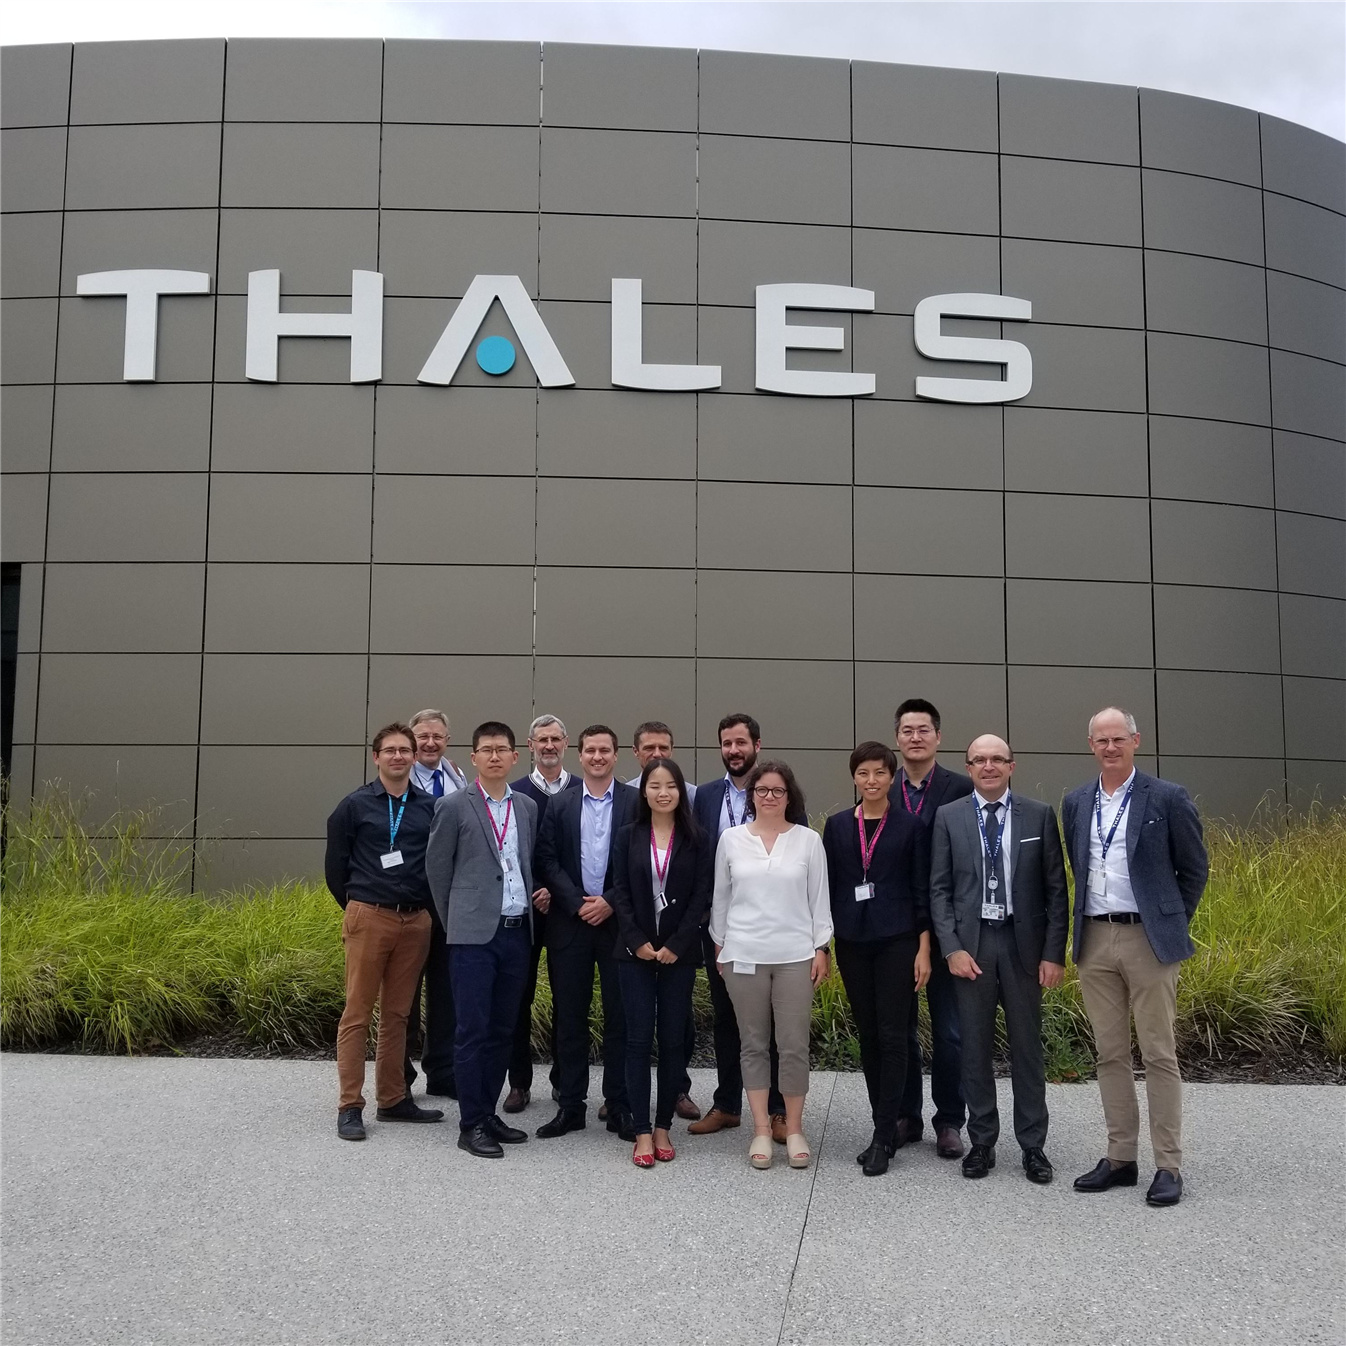 全球安全识别技术领军企业--泰雷兹集团(Thales)报名本届IDS